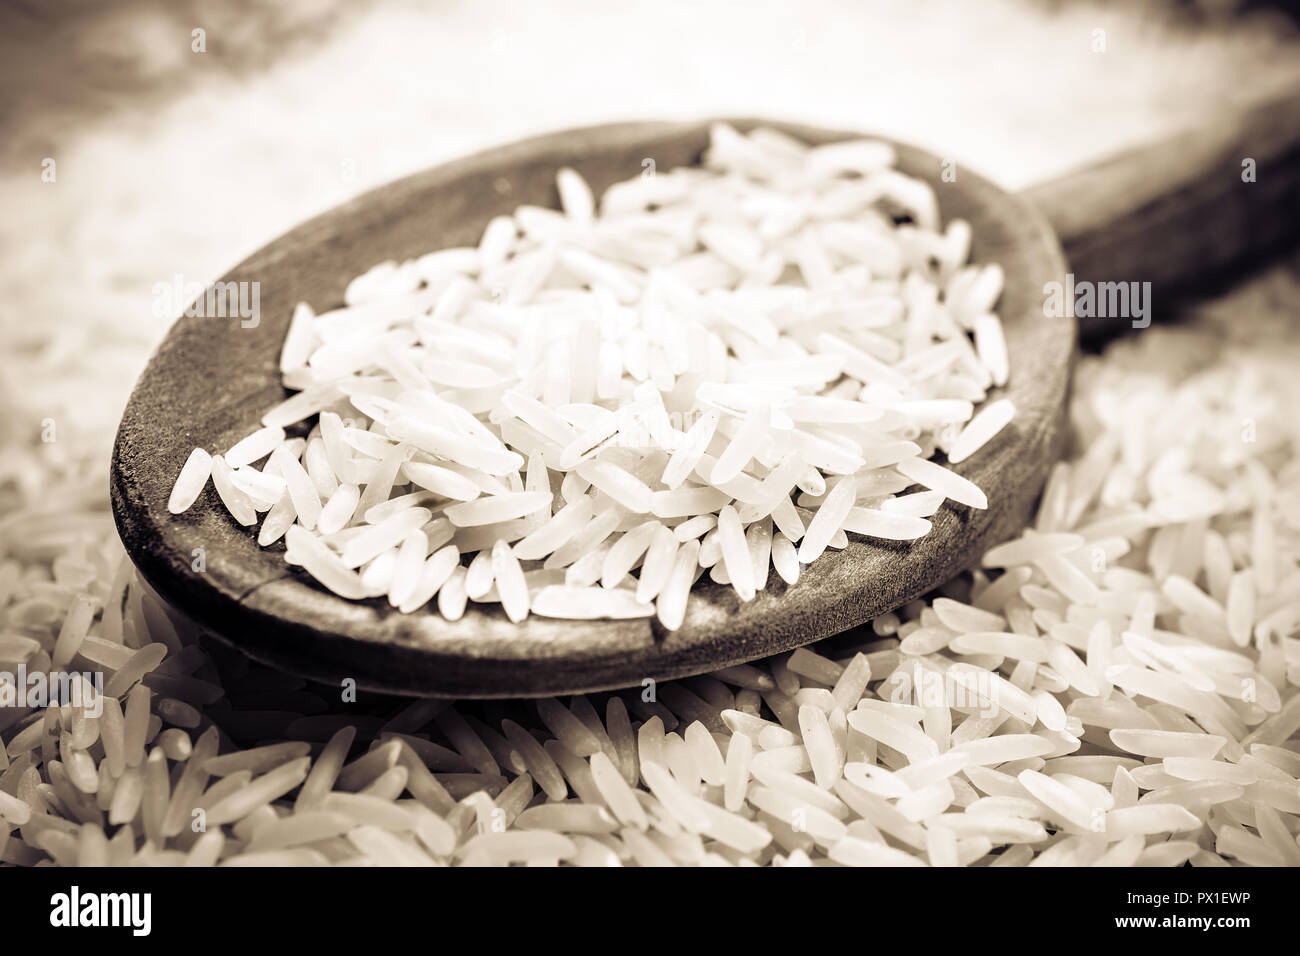 Une cuillère de cuisine en bois sur un tas de riz, des couleurs monochromes Banque D'Images